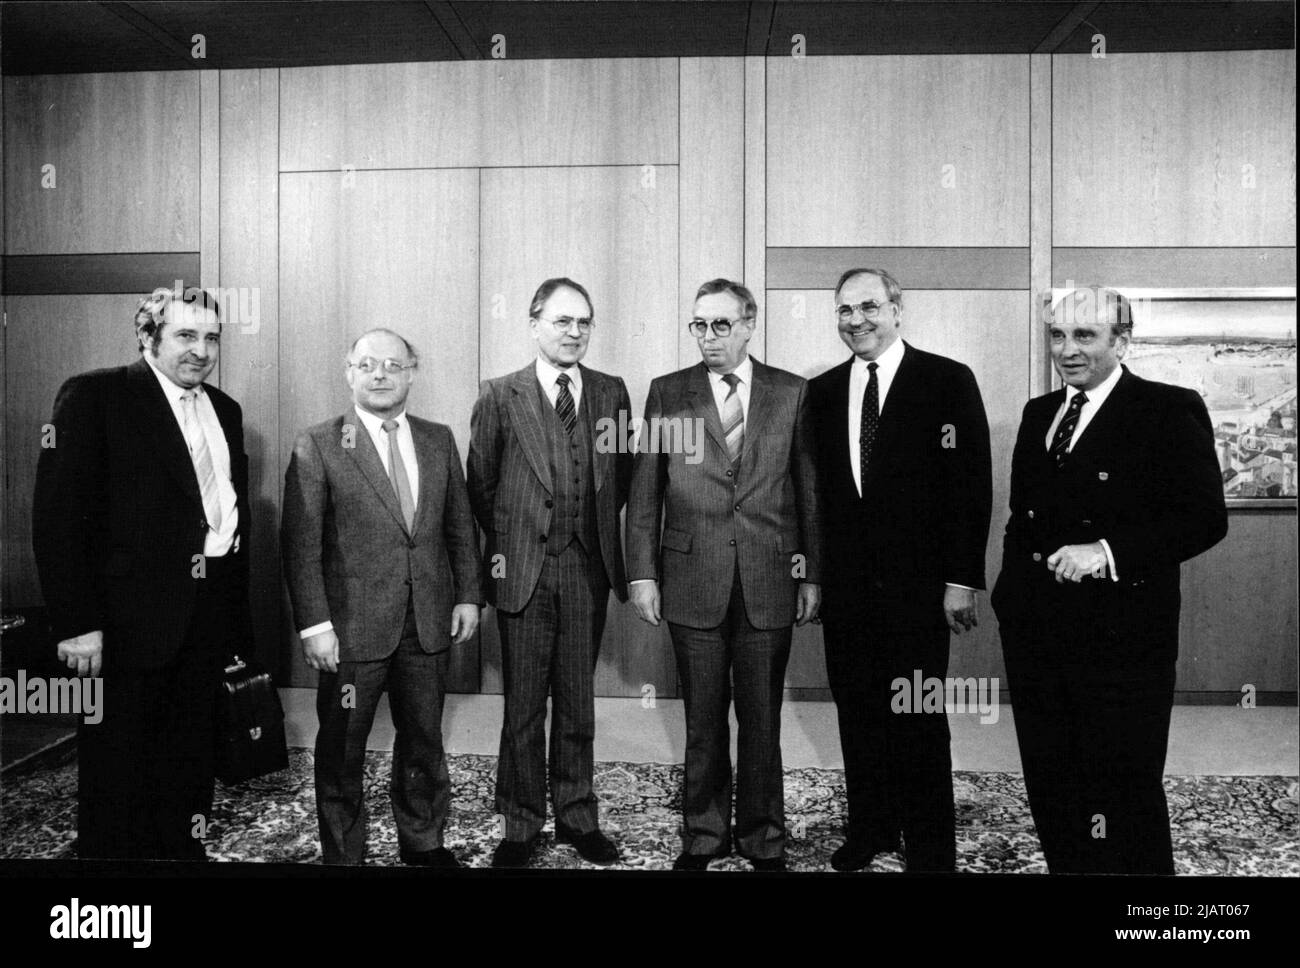 Vorsitzender des DGB Ernst breit (3. Von rechts) beim Treffen mit Bundeskanzler Helmut Kohl (2. Von rechts). Im Bild sind auch die Politiker Norbert Blüm (CDU, 2. Von links) und Otto Graf Lambsdorff (FDP, 1. Rechts) zu sehen. Stockfoto